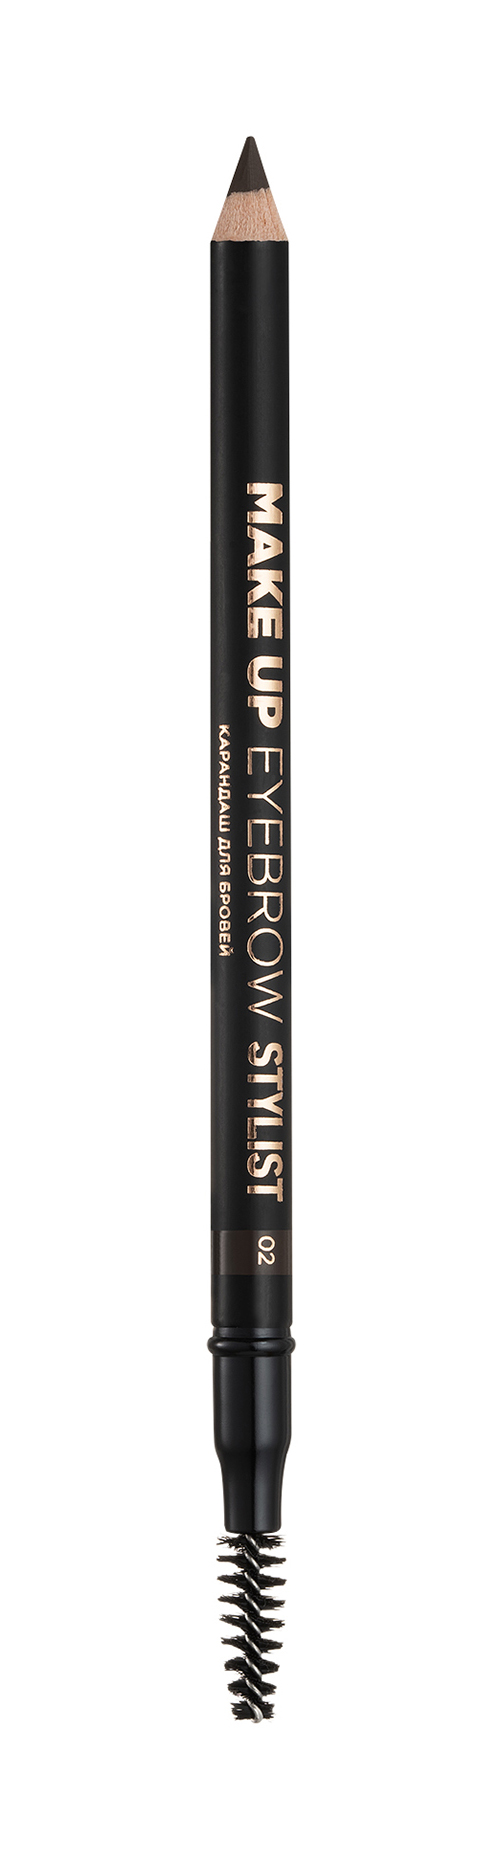 Карандаш для бровей Eva Mosaic Make up Eyebrow Stylist карандаш для бровей make up factory автоматический тёмный серо коричневый тон 07